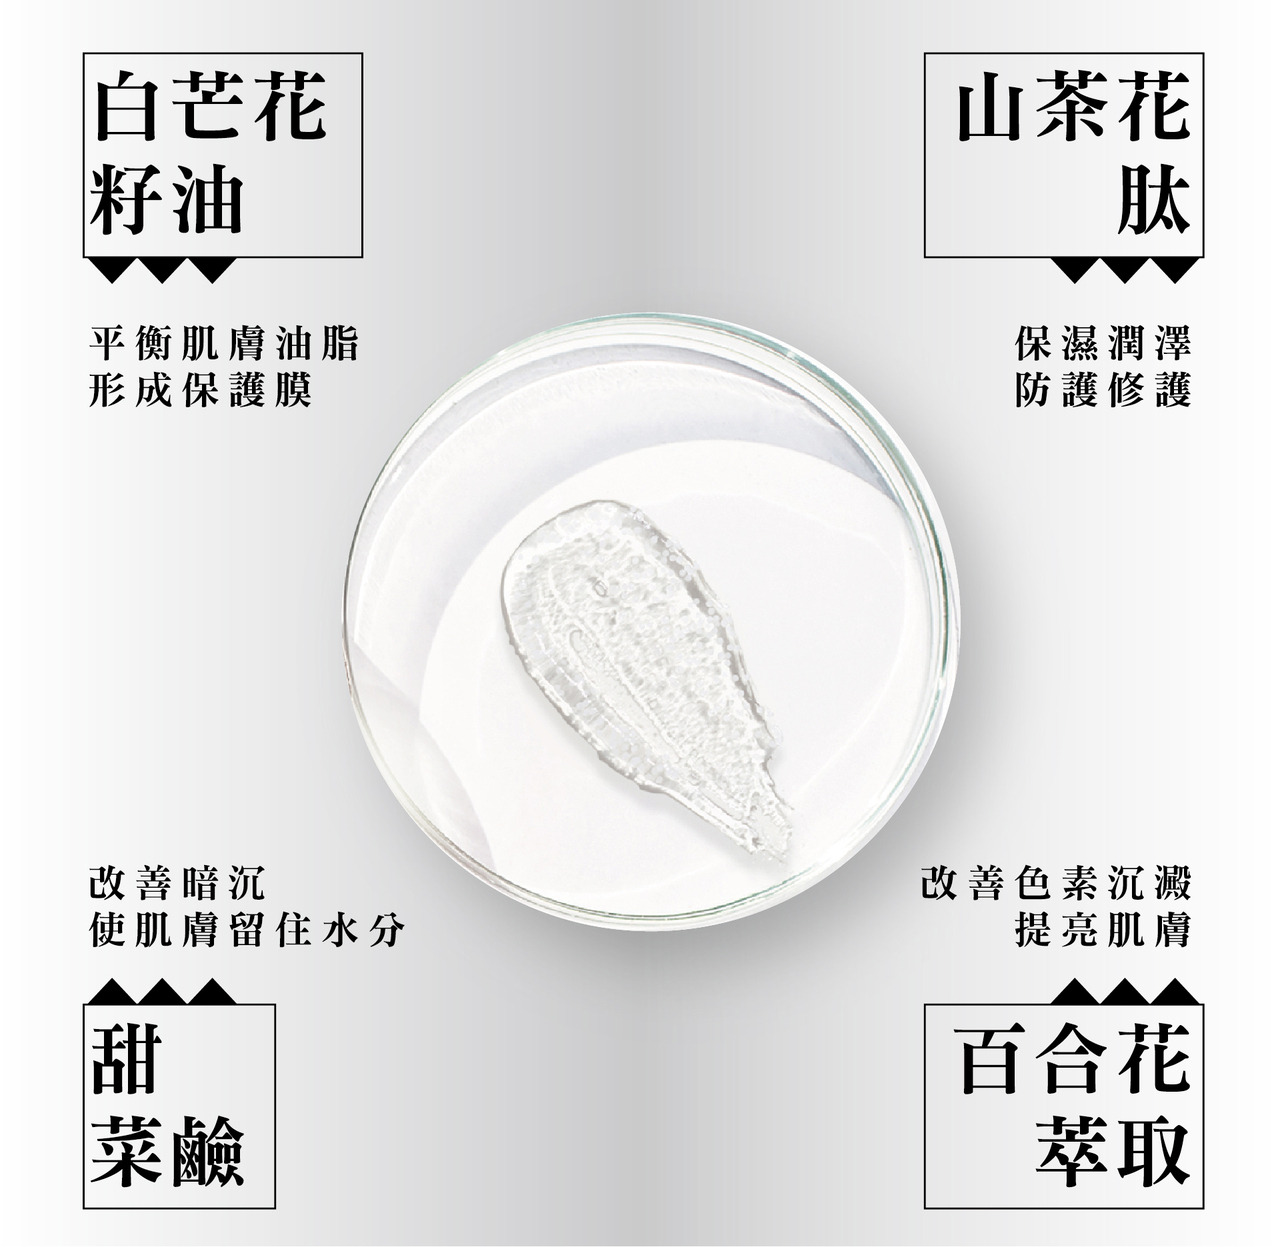 白珍珠魚子極塑霜成分白芒花籽油與山茶花肽等介紹